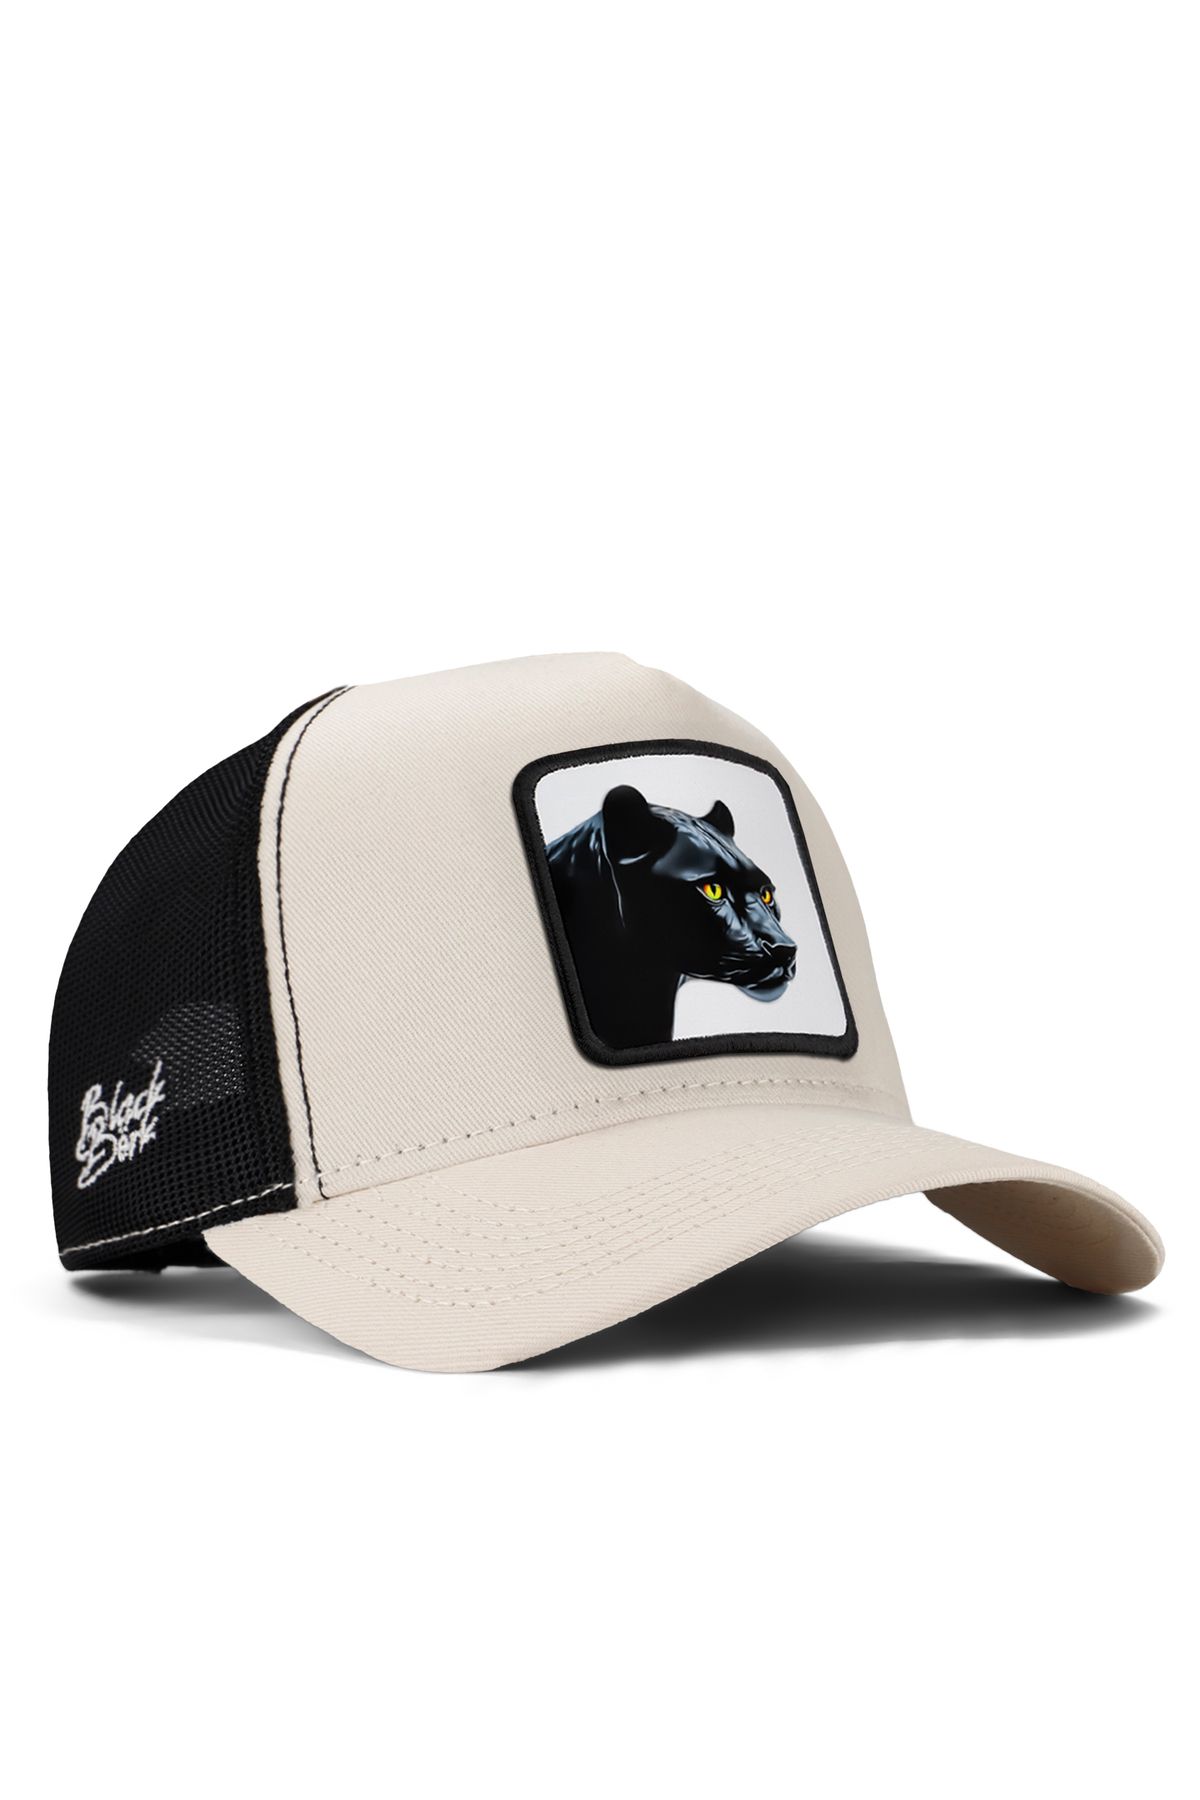 BlackBörk V1 Trucker Panter - 4bs Kod Logolu Unisex Bej-siyah Şapka (CAP)